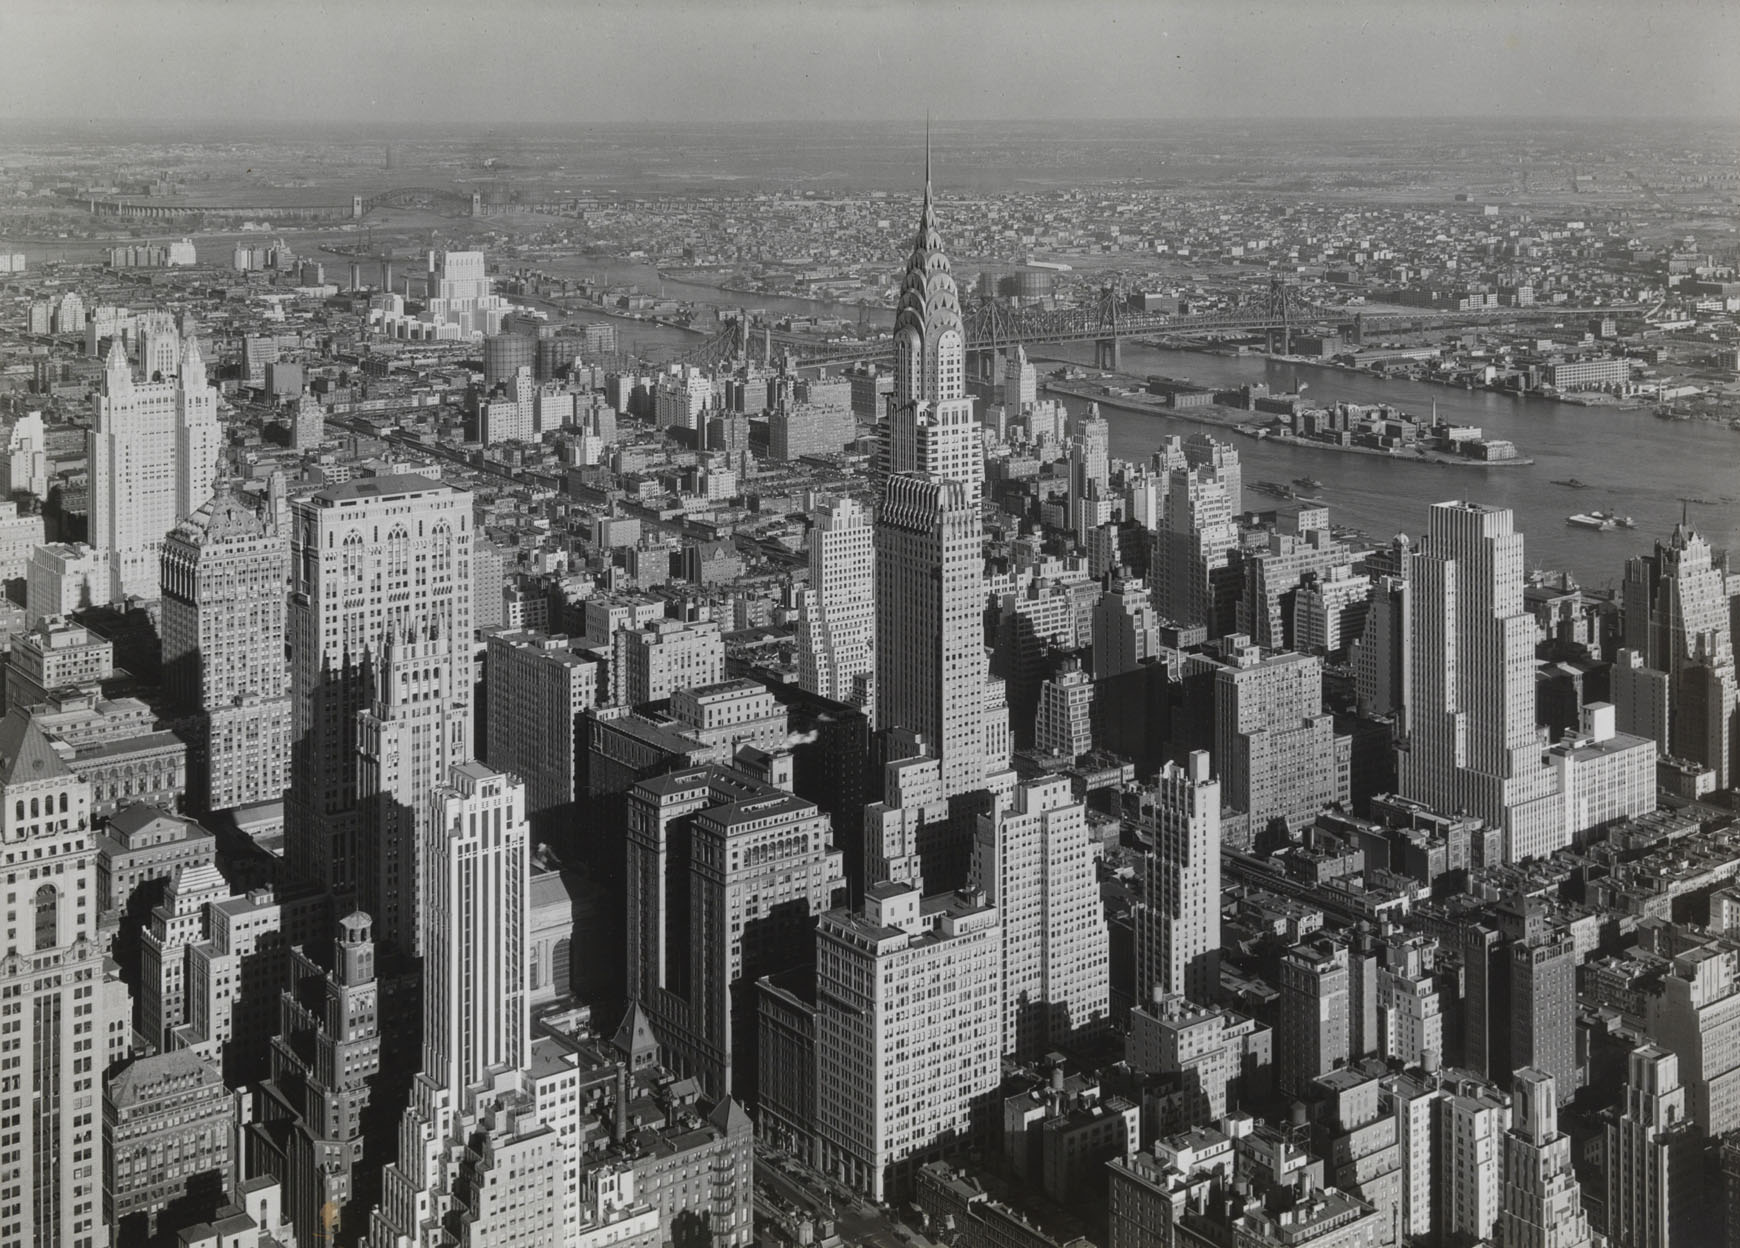 マンハッタン、北東方向、1932 年撮影：サミュエル H. ゴッツチョ ニューヨーク市立博物館、39.20.2